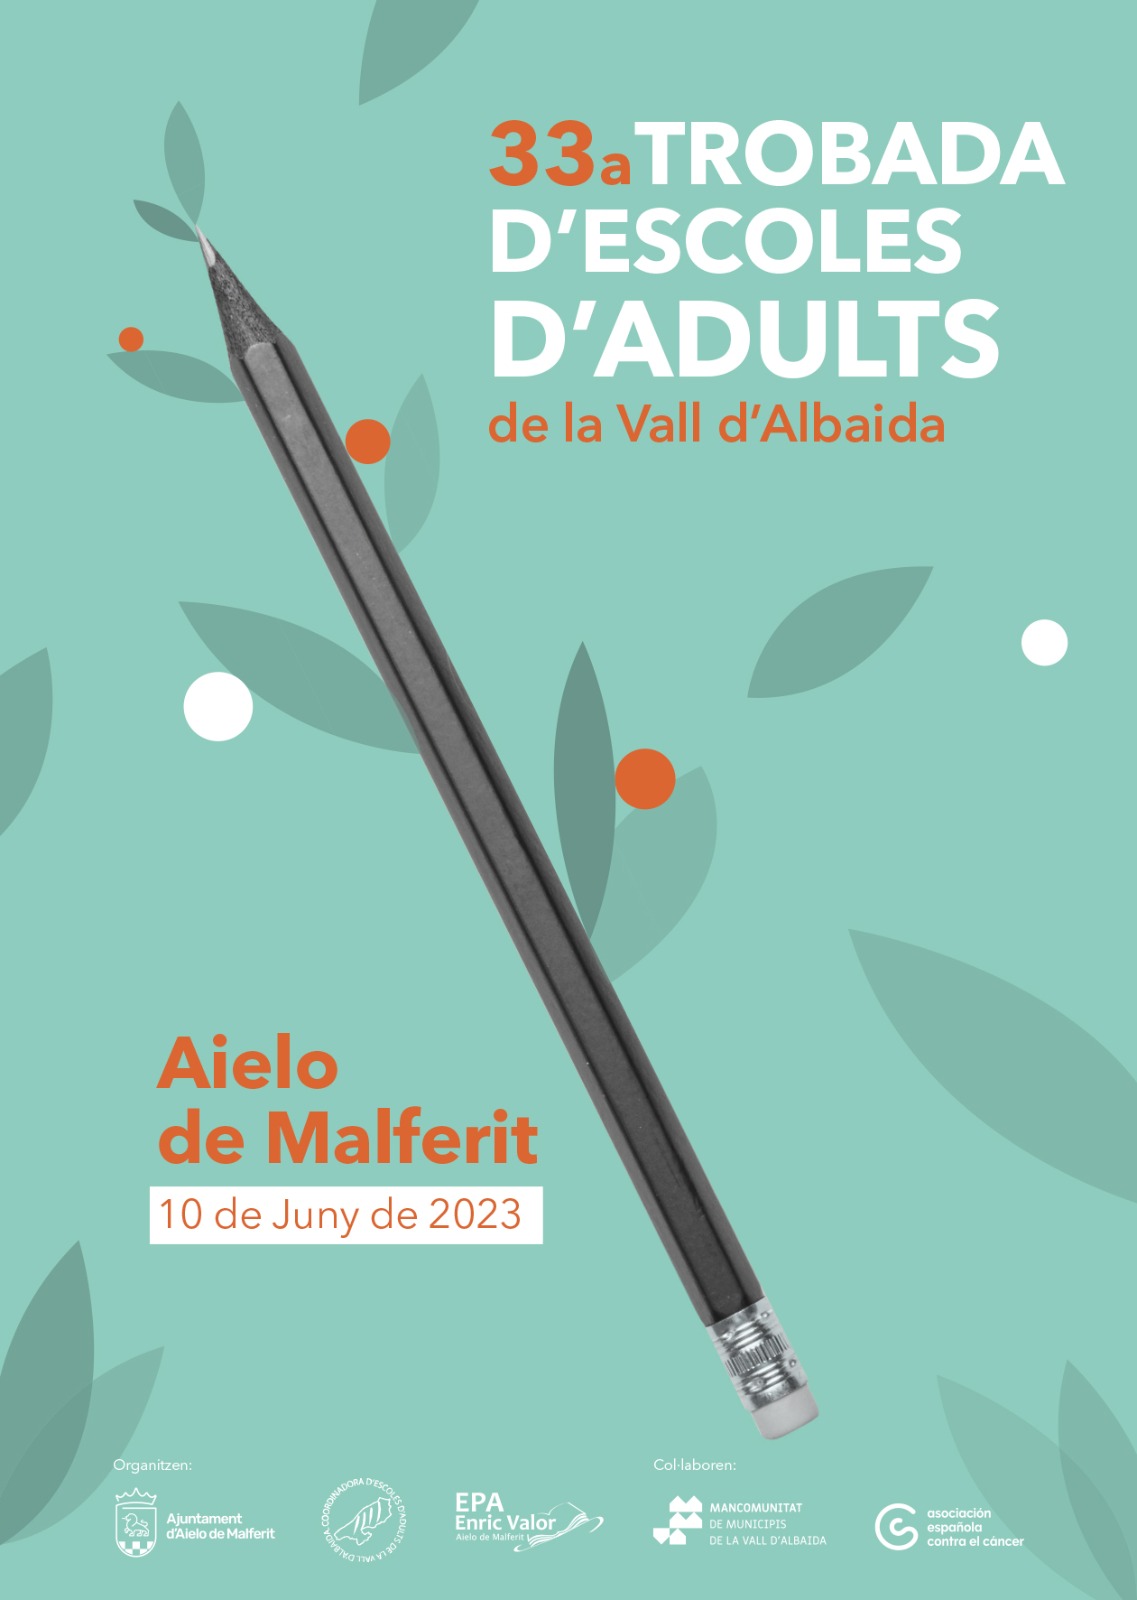 33a TROBADA D’ESCOLES D’ADULTS de la Vall d’Albaida